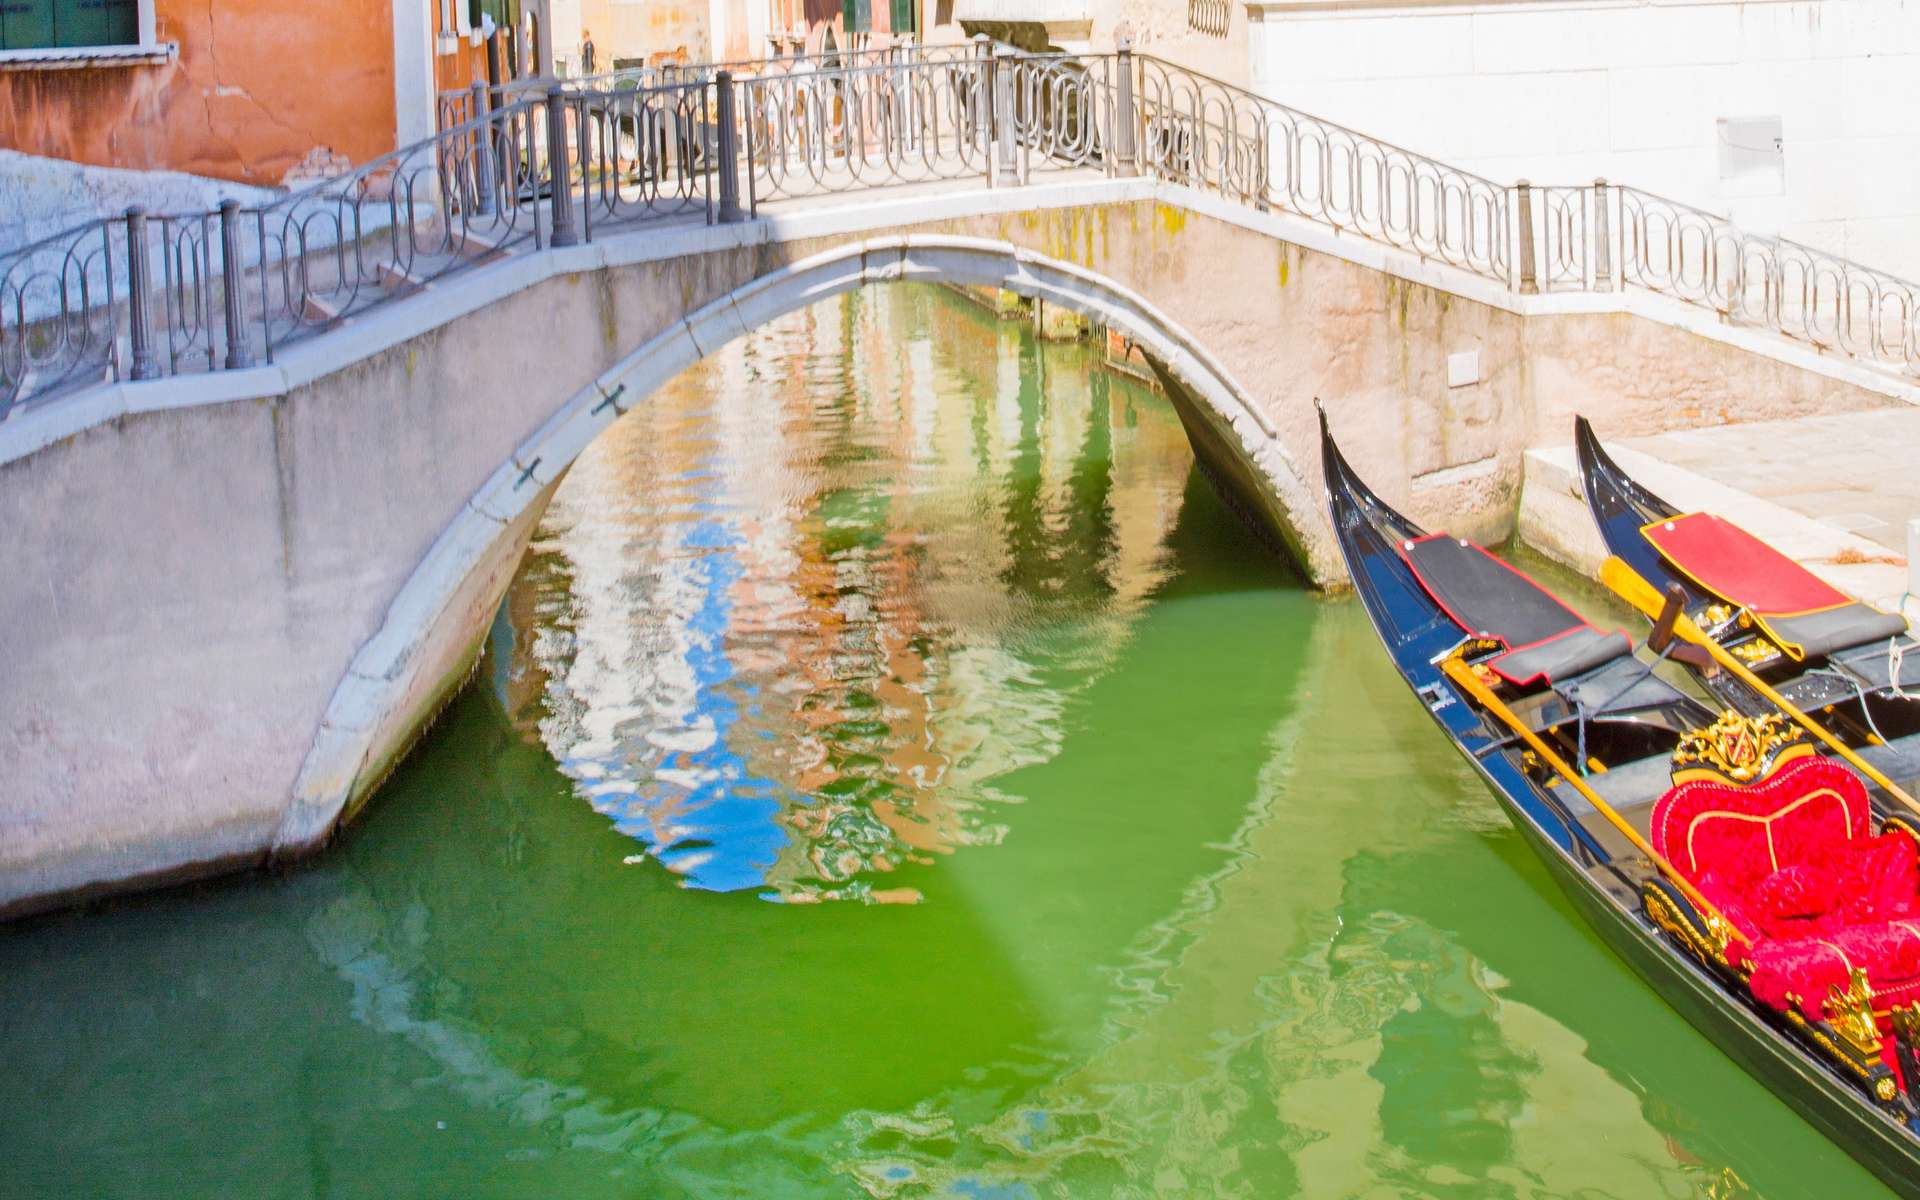 Les canaux de Venise ont viré au vert fluo ! D'où vient cette étrange couleur ?